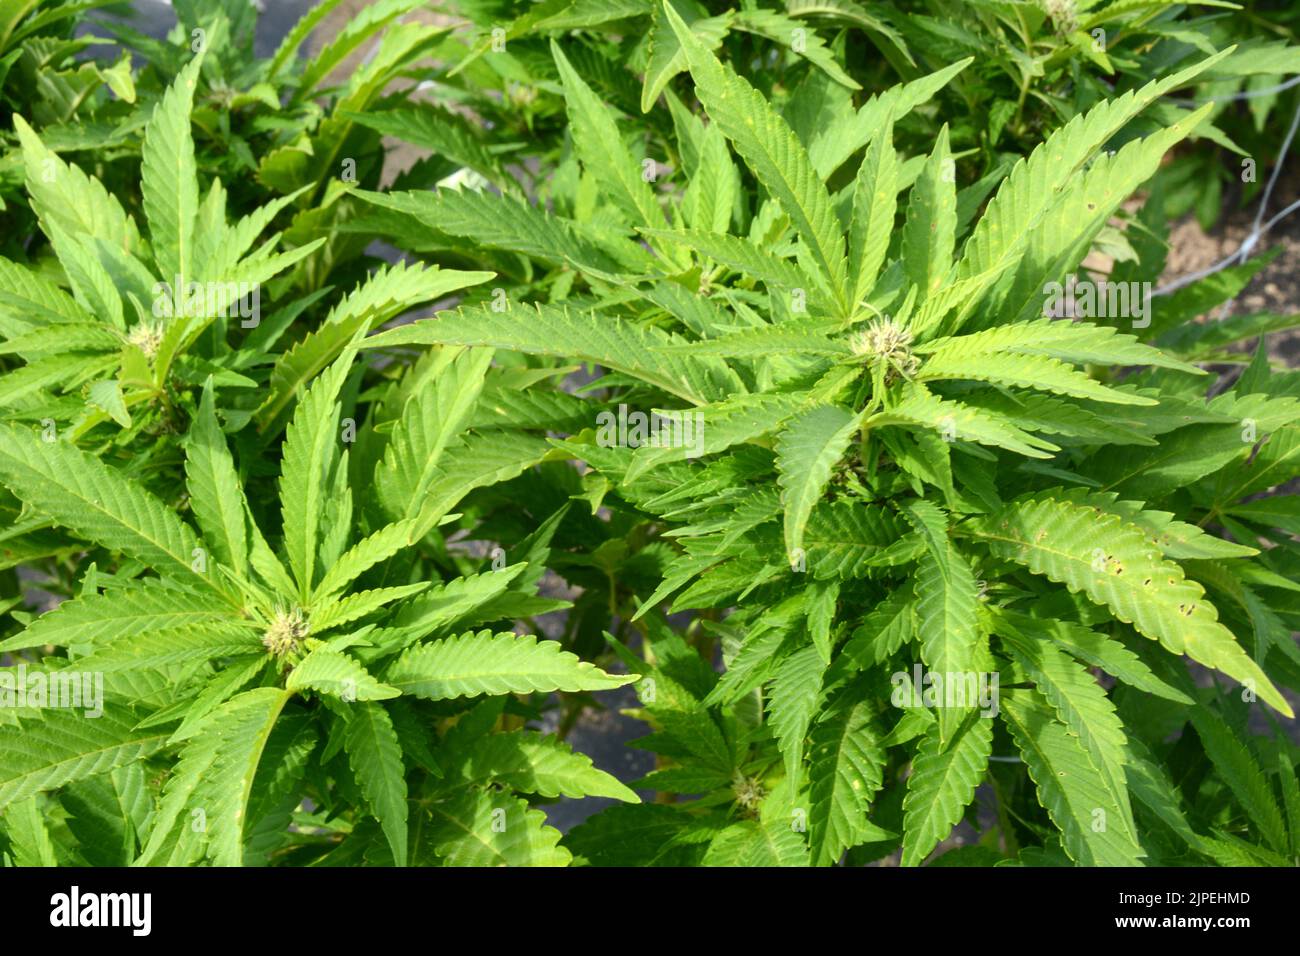 Plantas recreativas legales de marihuana o cannabis que se cultivan al aire libre en una granja sostenible cerca de la ciudad de Creemore, Ontario, Canadá. Foto de stock